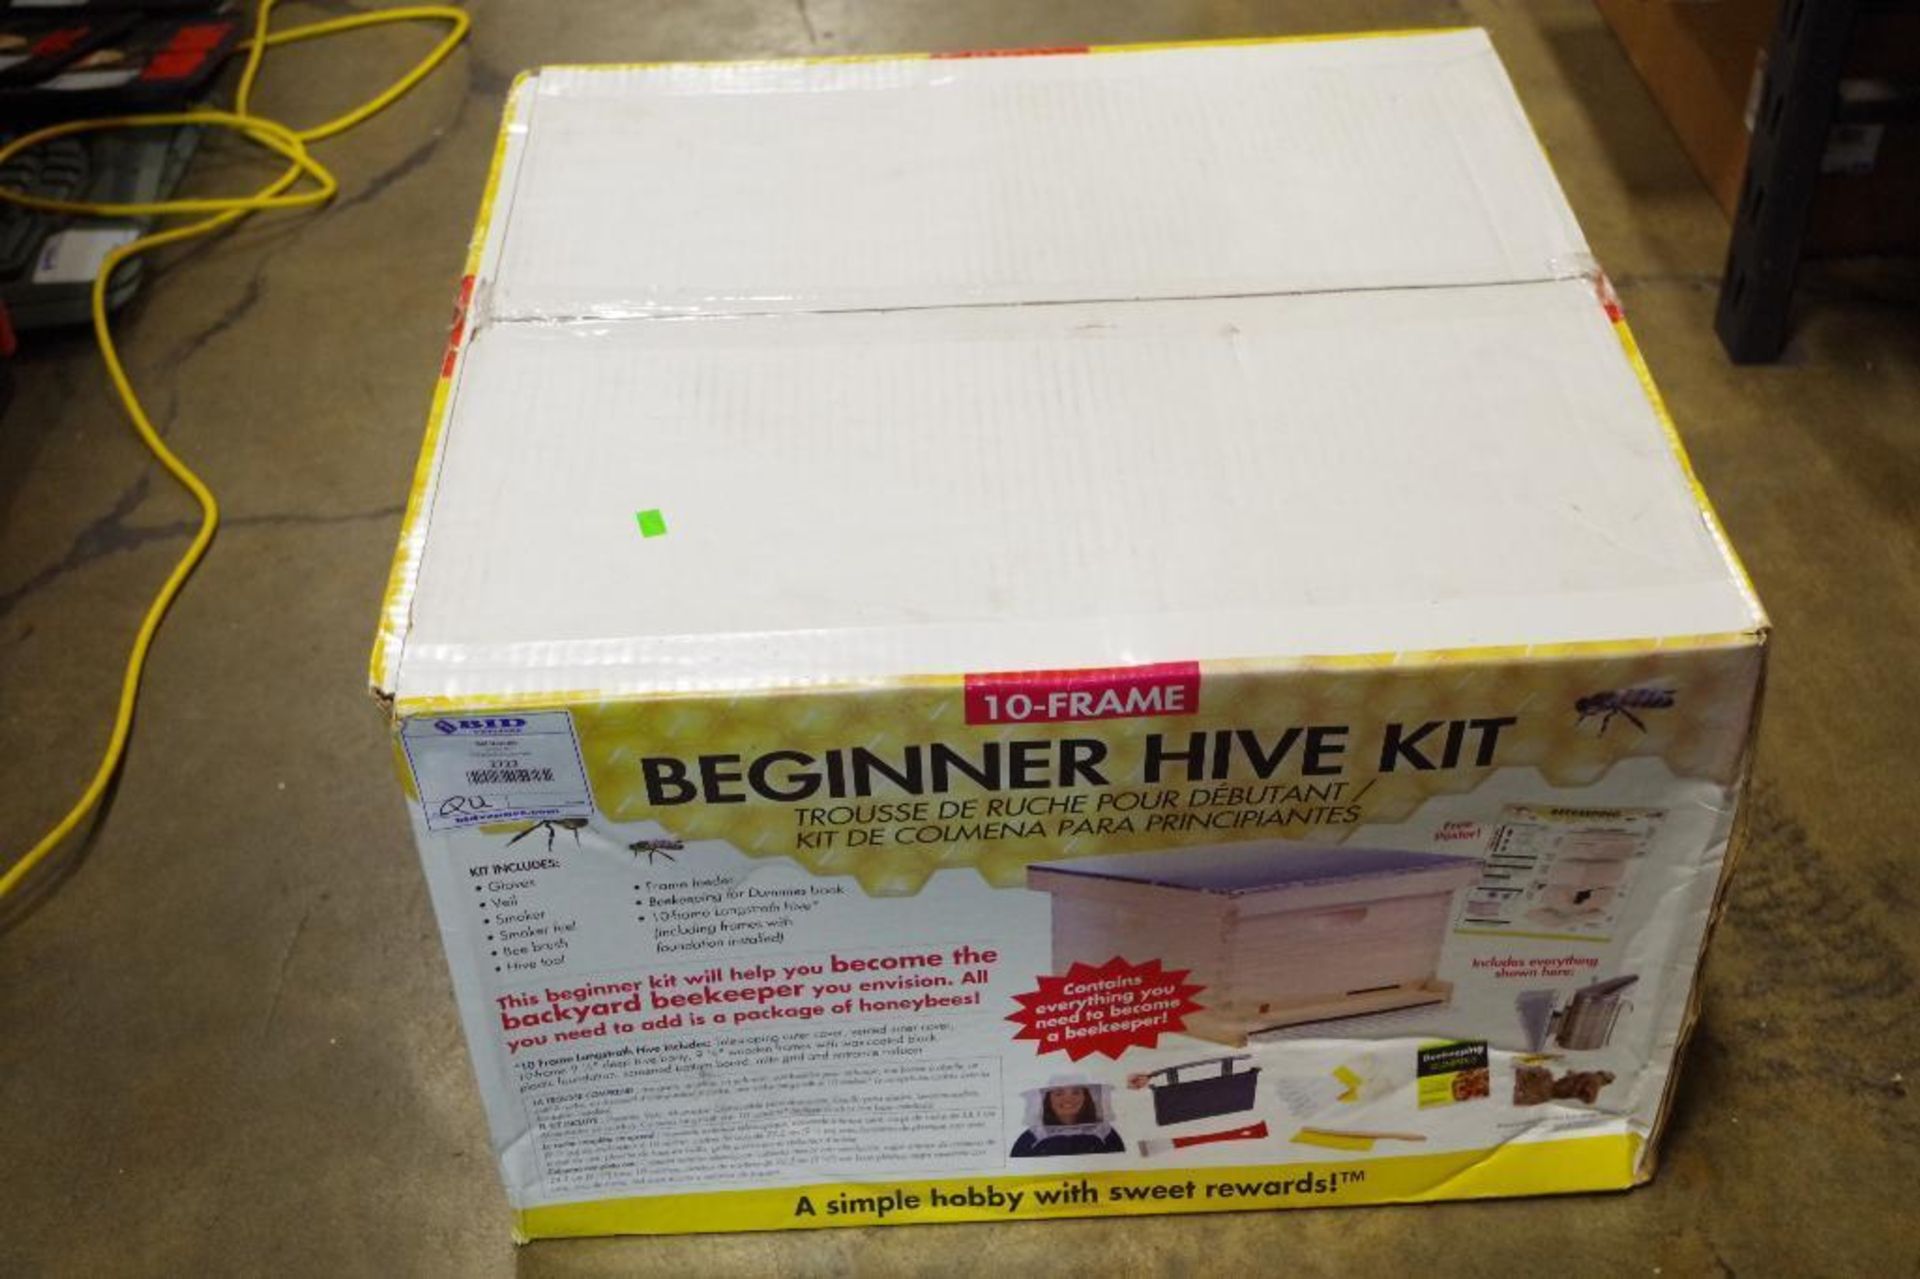 10-Frame Beginner Hive Kit - Image 2 of 4